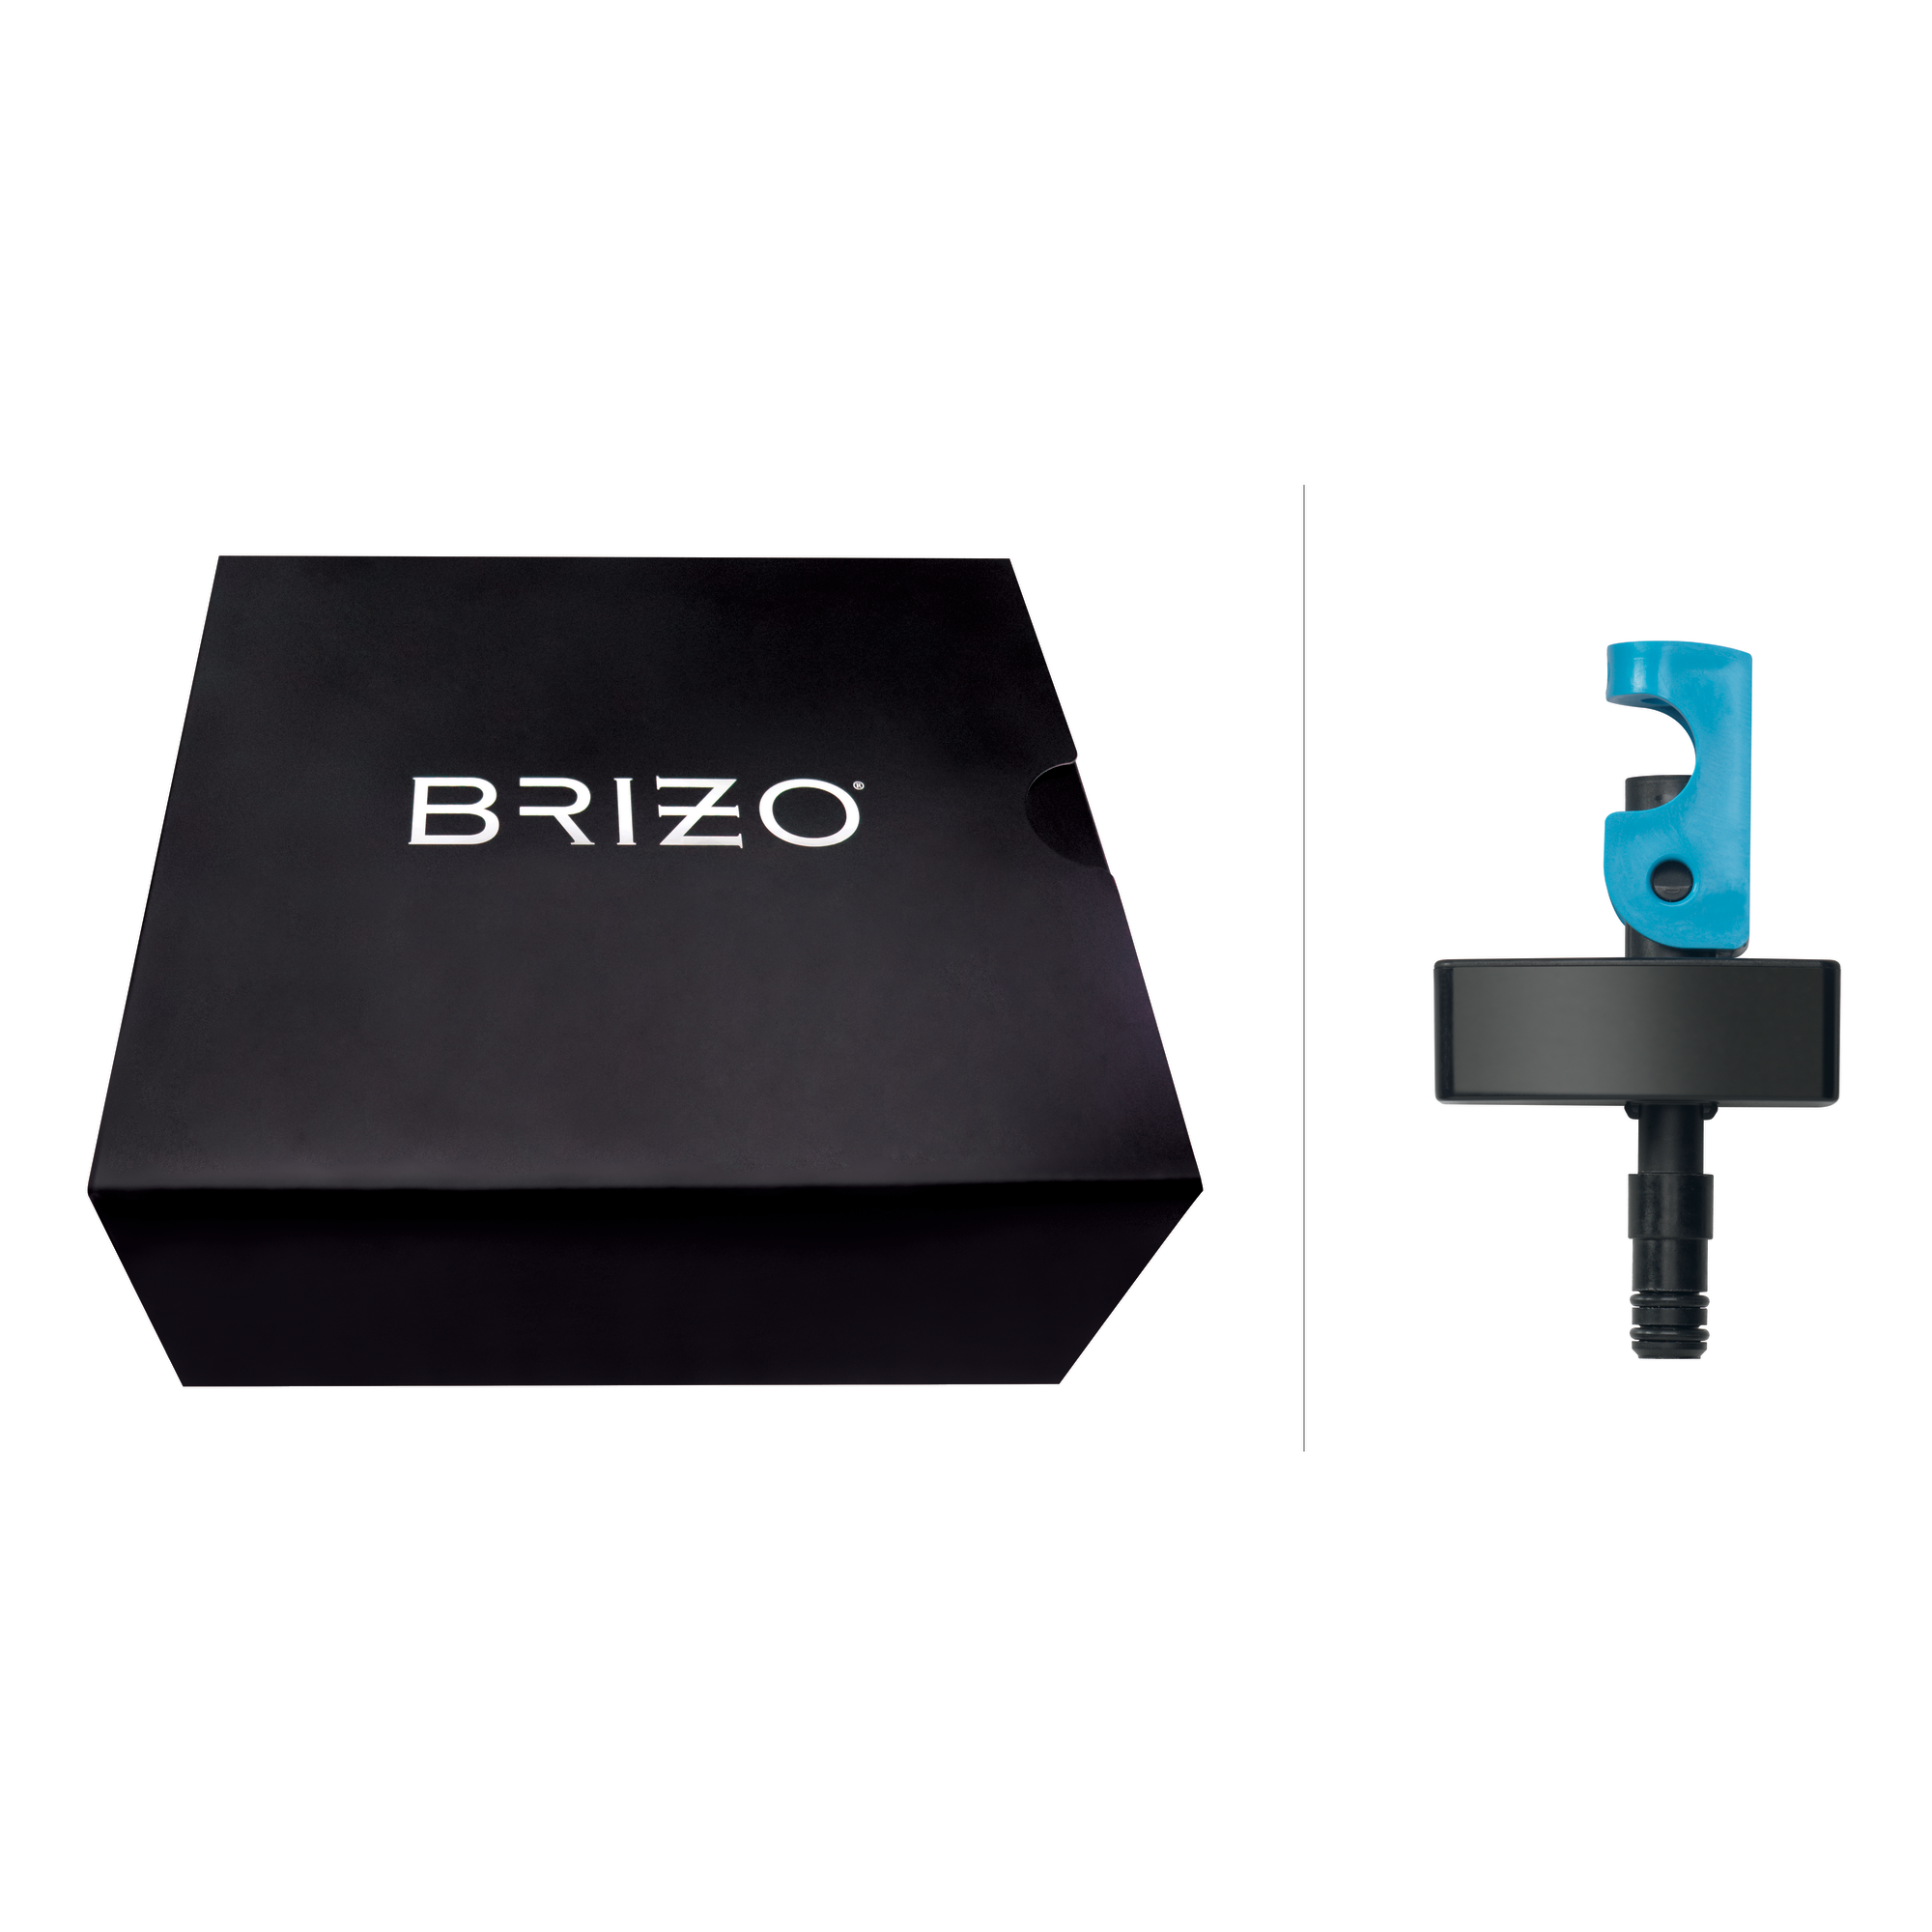 Brizo Other: Brizo VoiceIQ Module